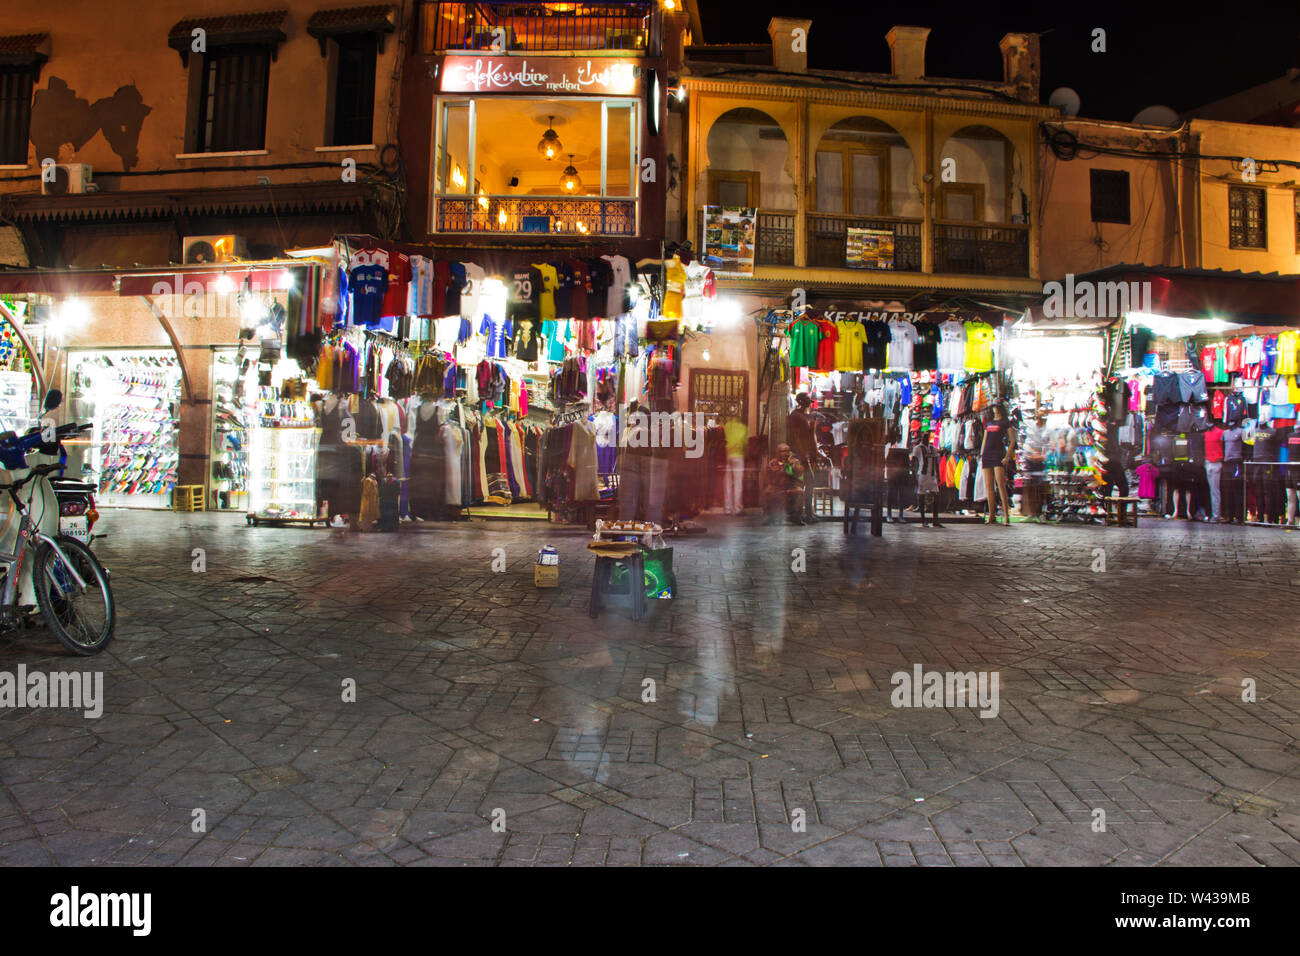 Il mercato notturno in Marrakech piazza Jema el Fna sera raduno di gente del posto e i turisti alla tradizionale islamico vivace luce bassa piazza del mercato in Marocco Foto Stock